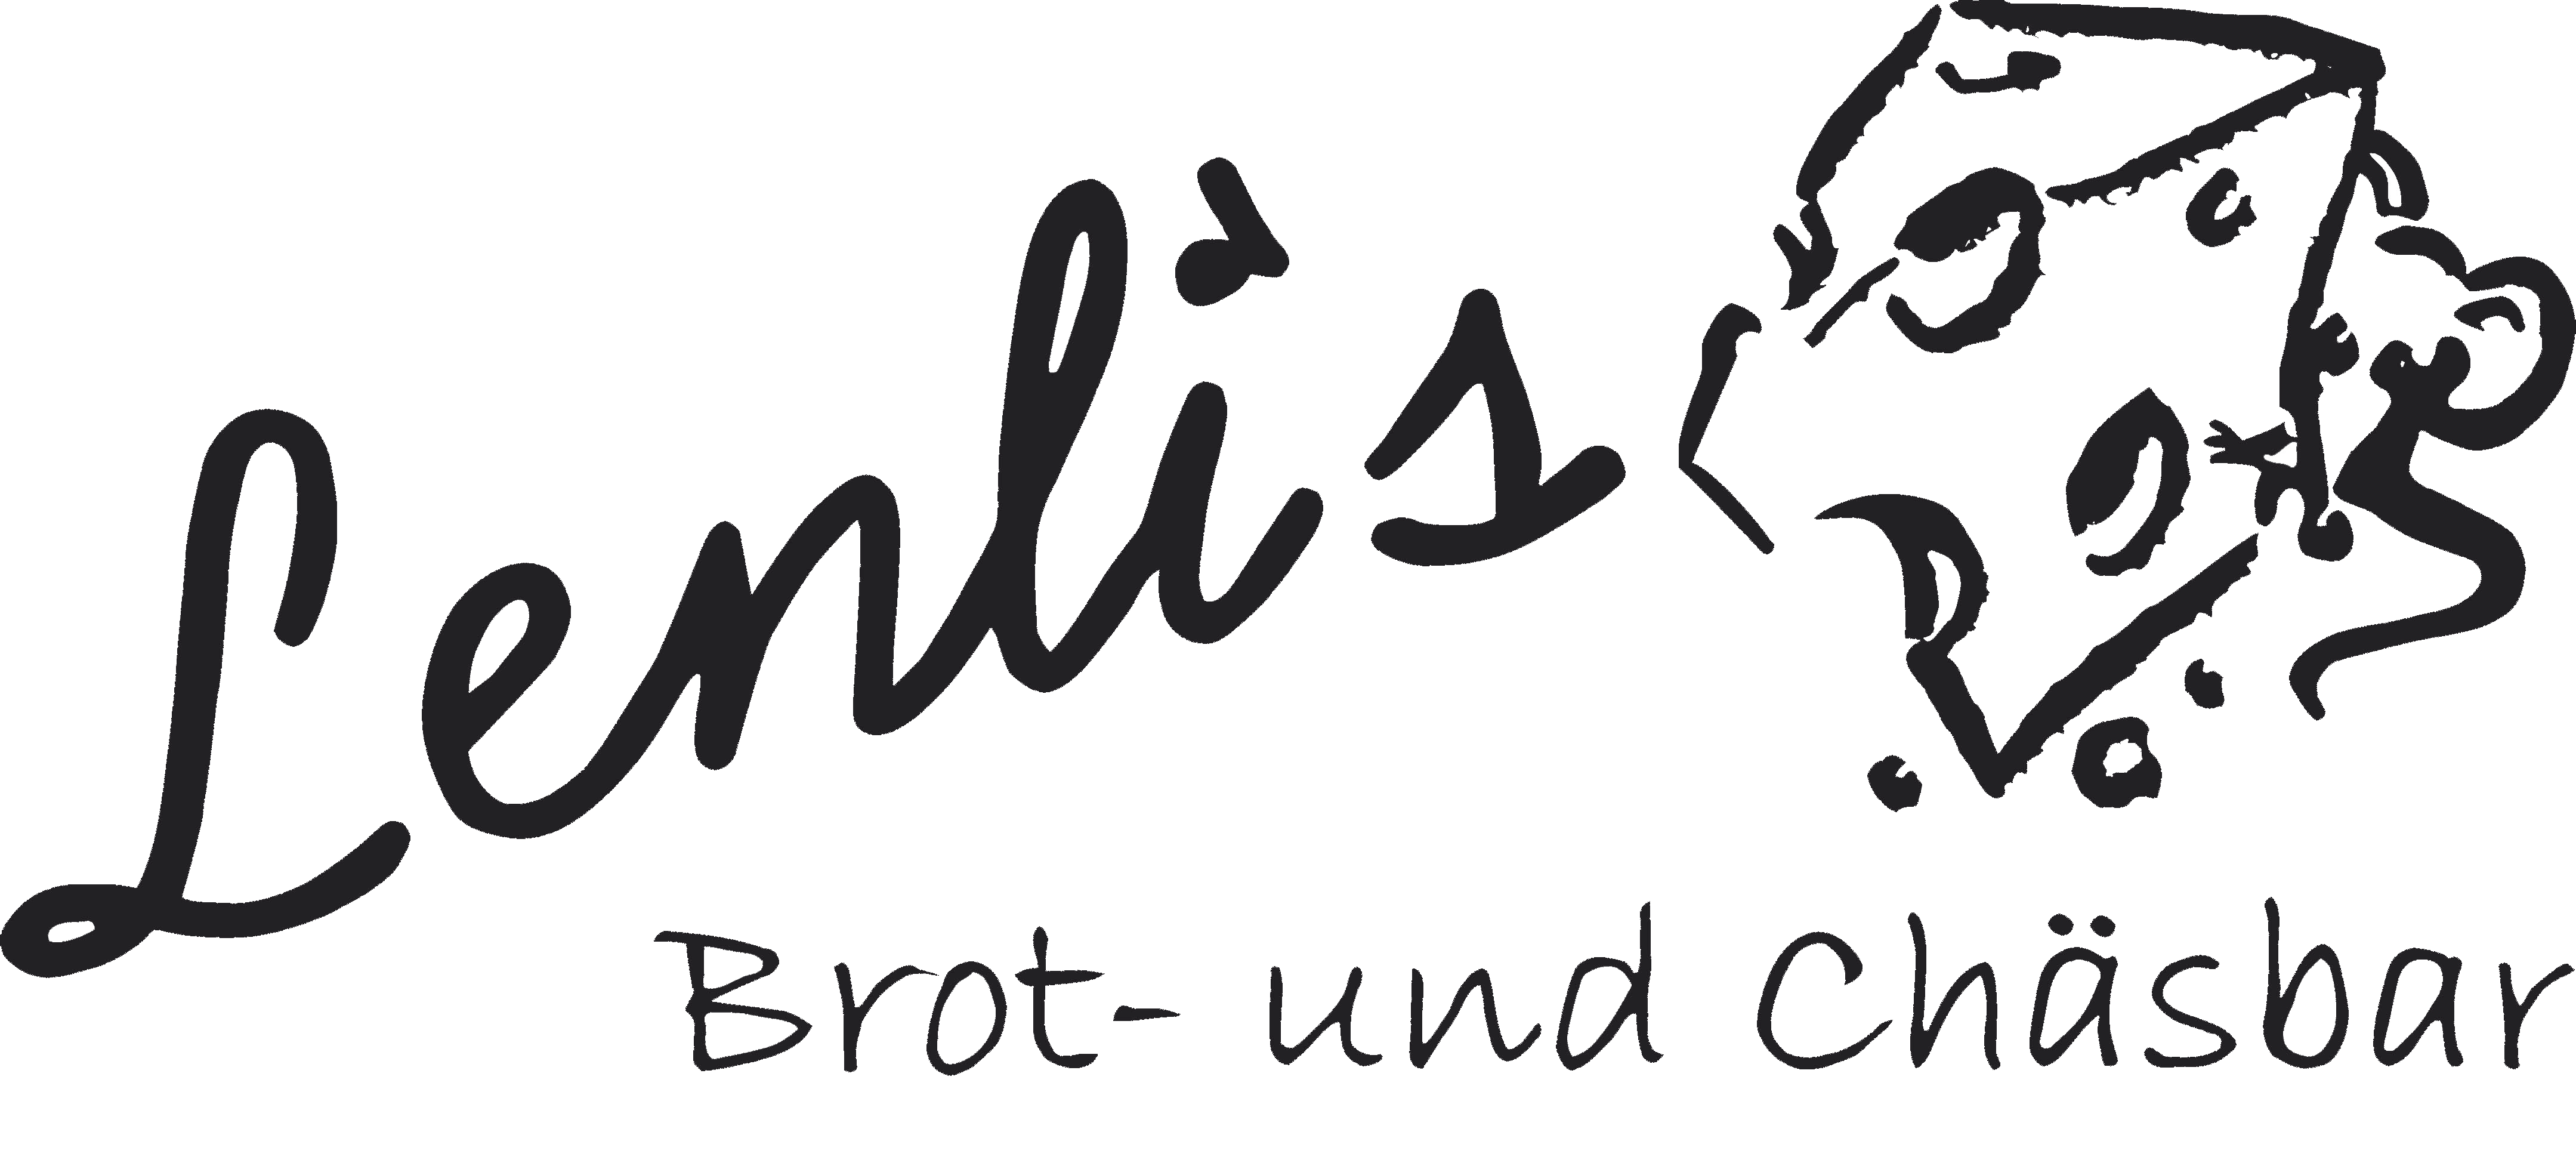 Lenlis Brot- und Chäsbar